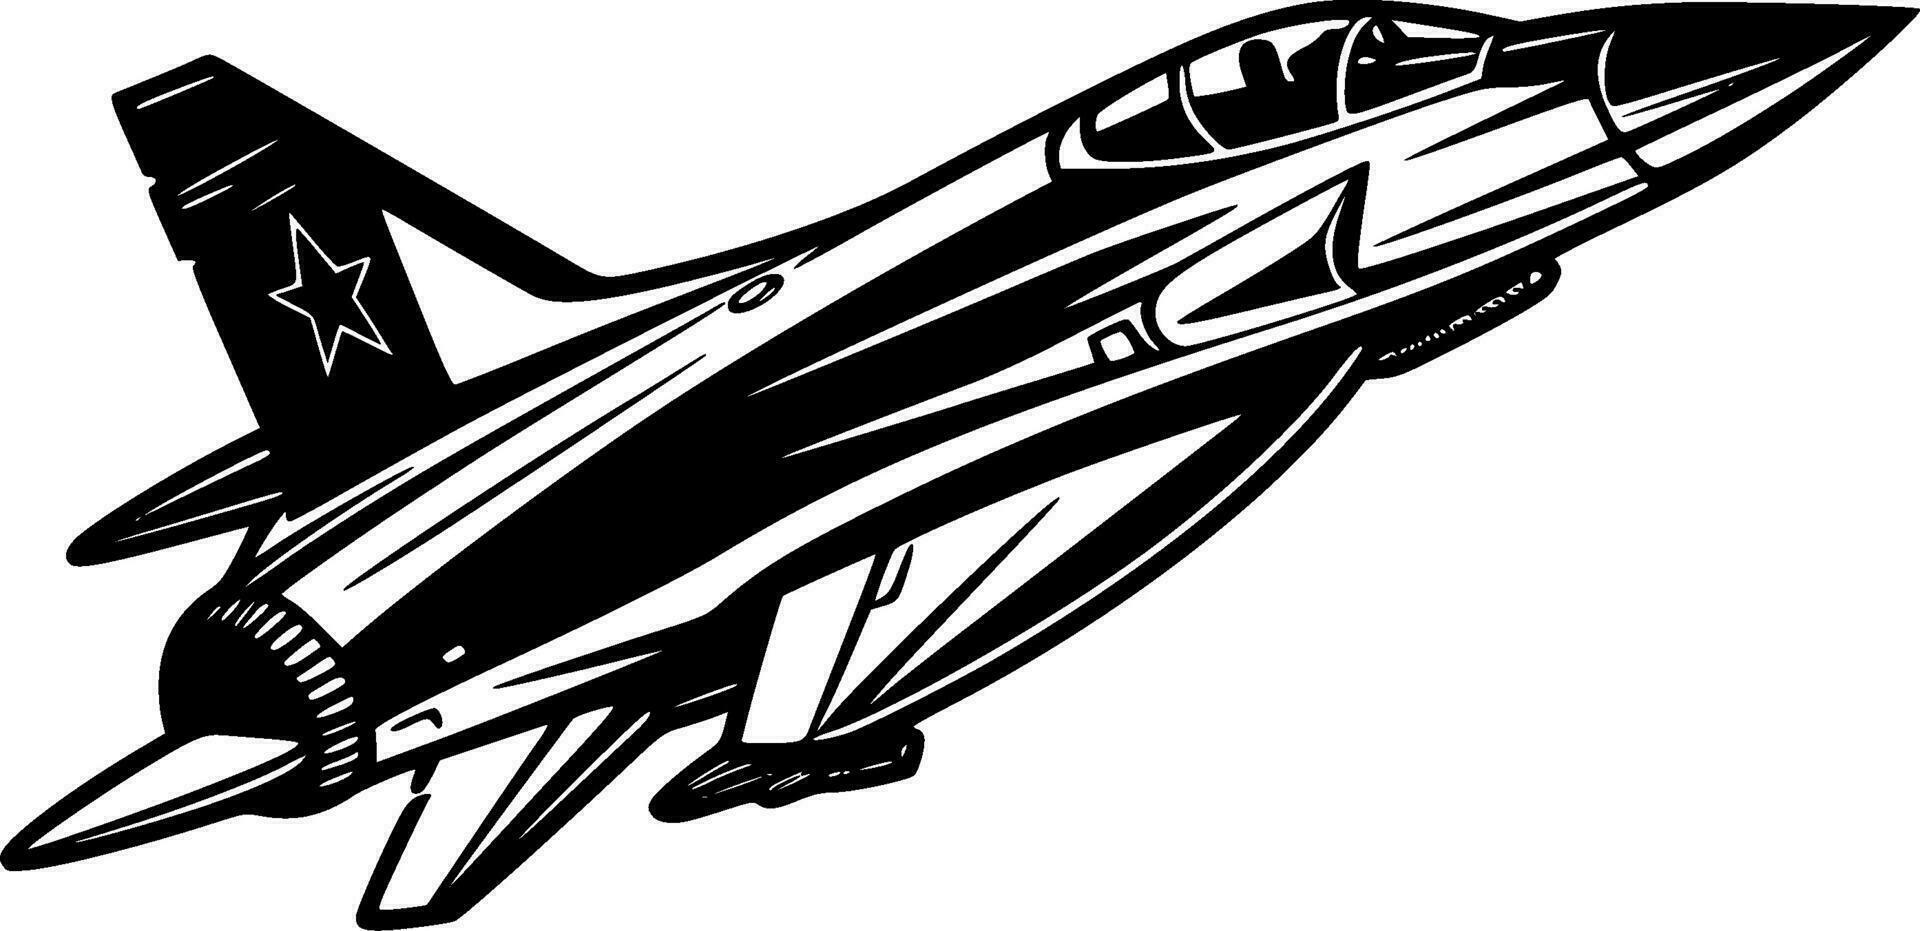 combattente Jet - minimalista e piatto logo - vettore illustrazione